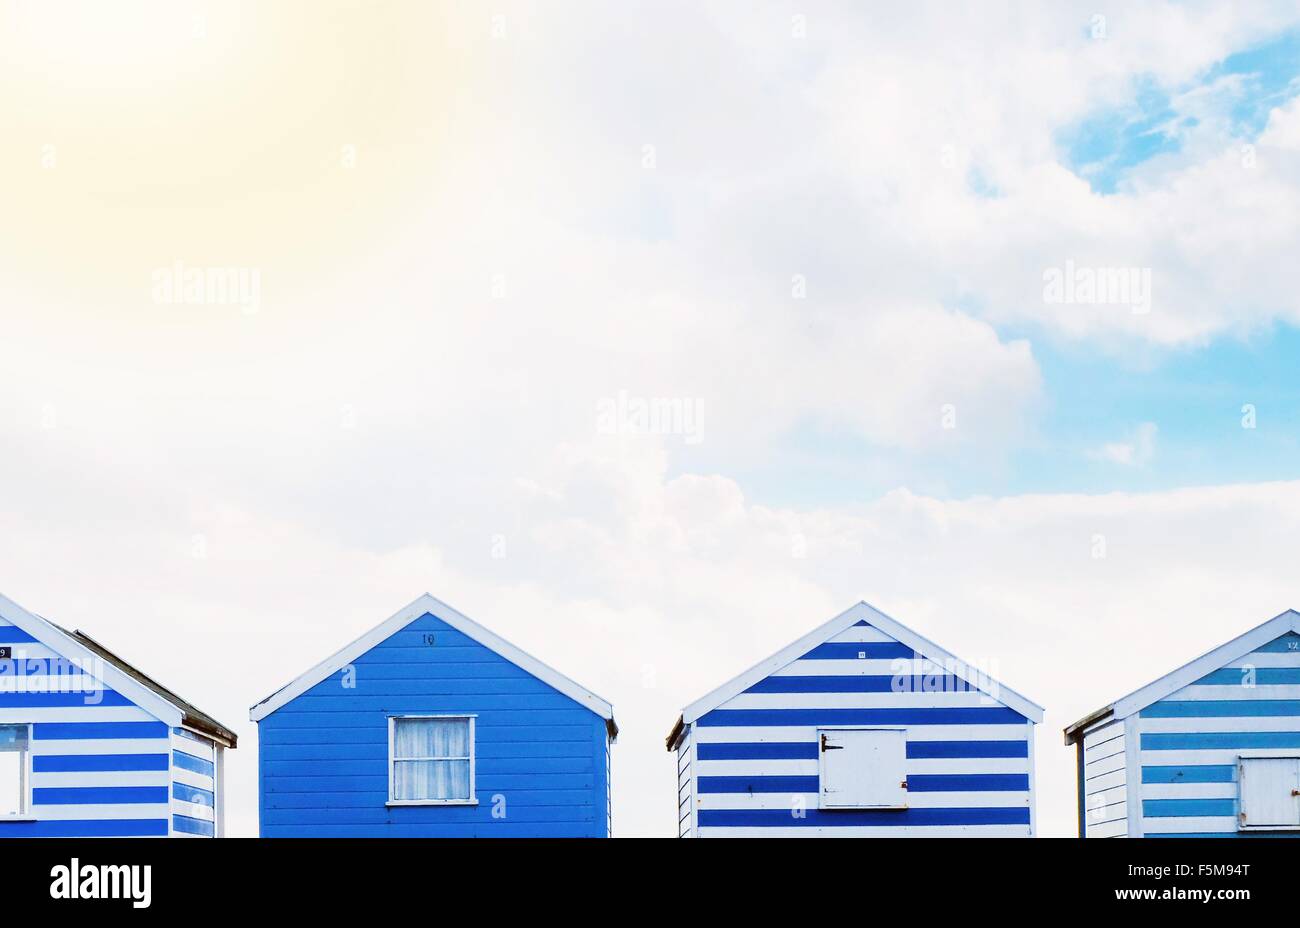 Row of beach huts Stock Photo